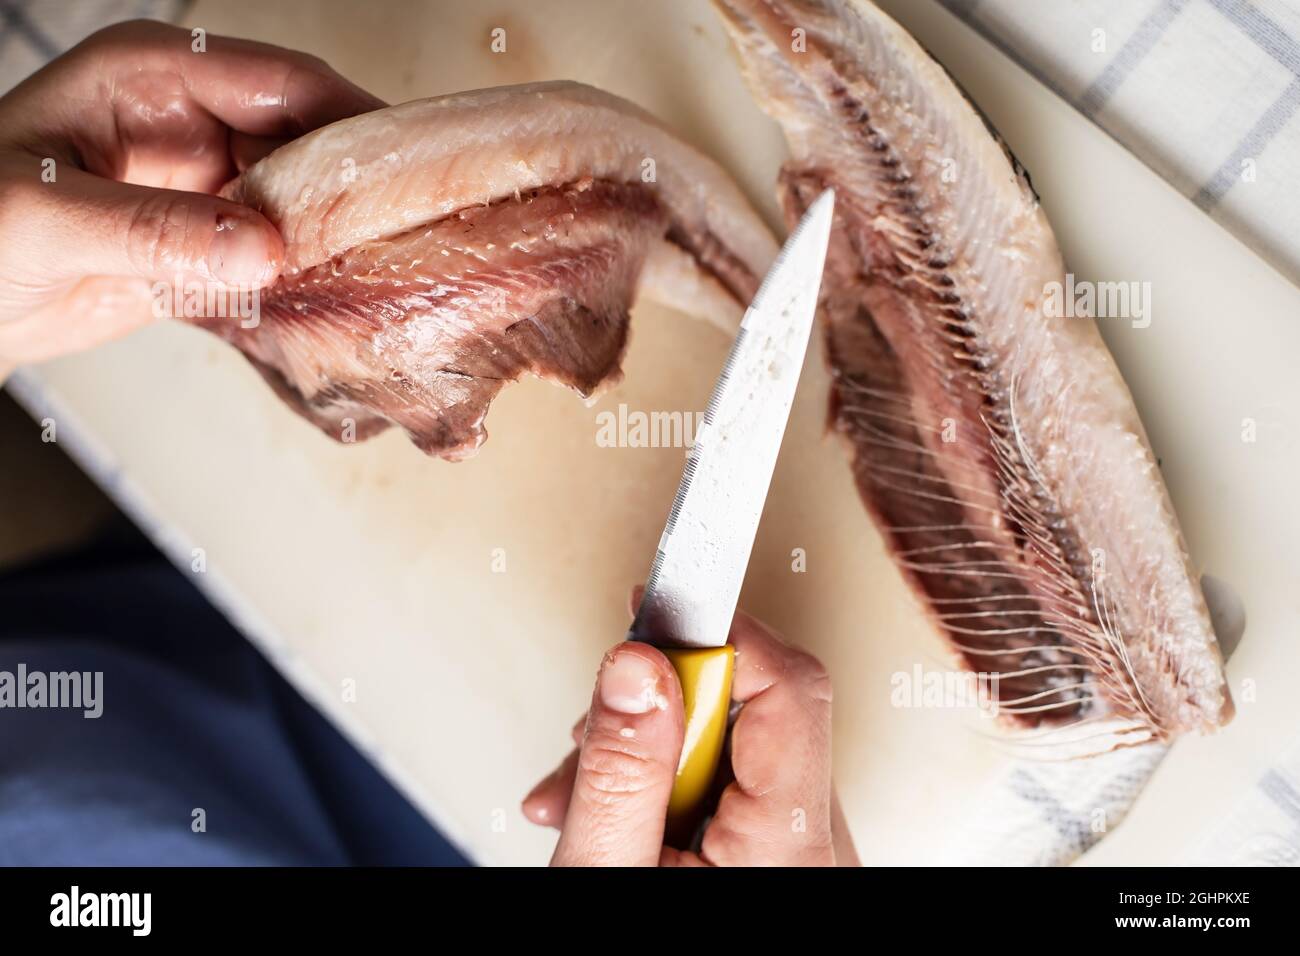 Les mains des femelles coupent le hareng salé à l'aide d'un couteau et séparent la chair des os, sur une planche à découper. Processus de cuisson. Vue de dessus. Banque D'Images